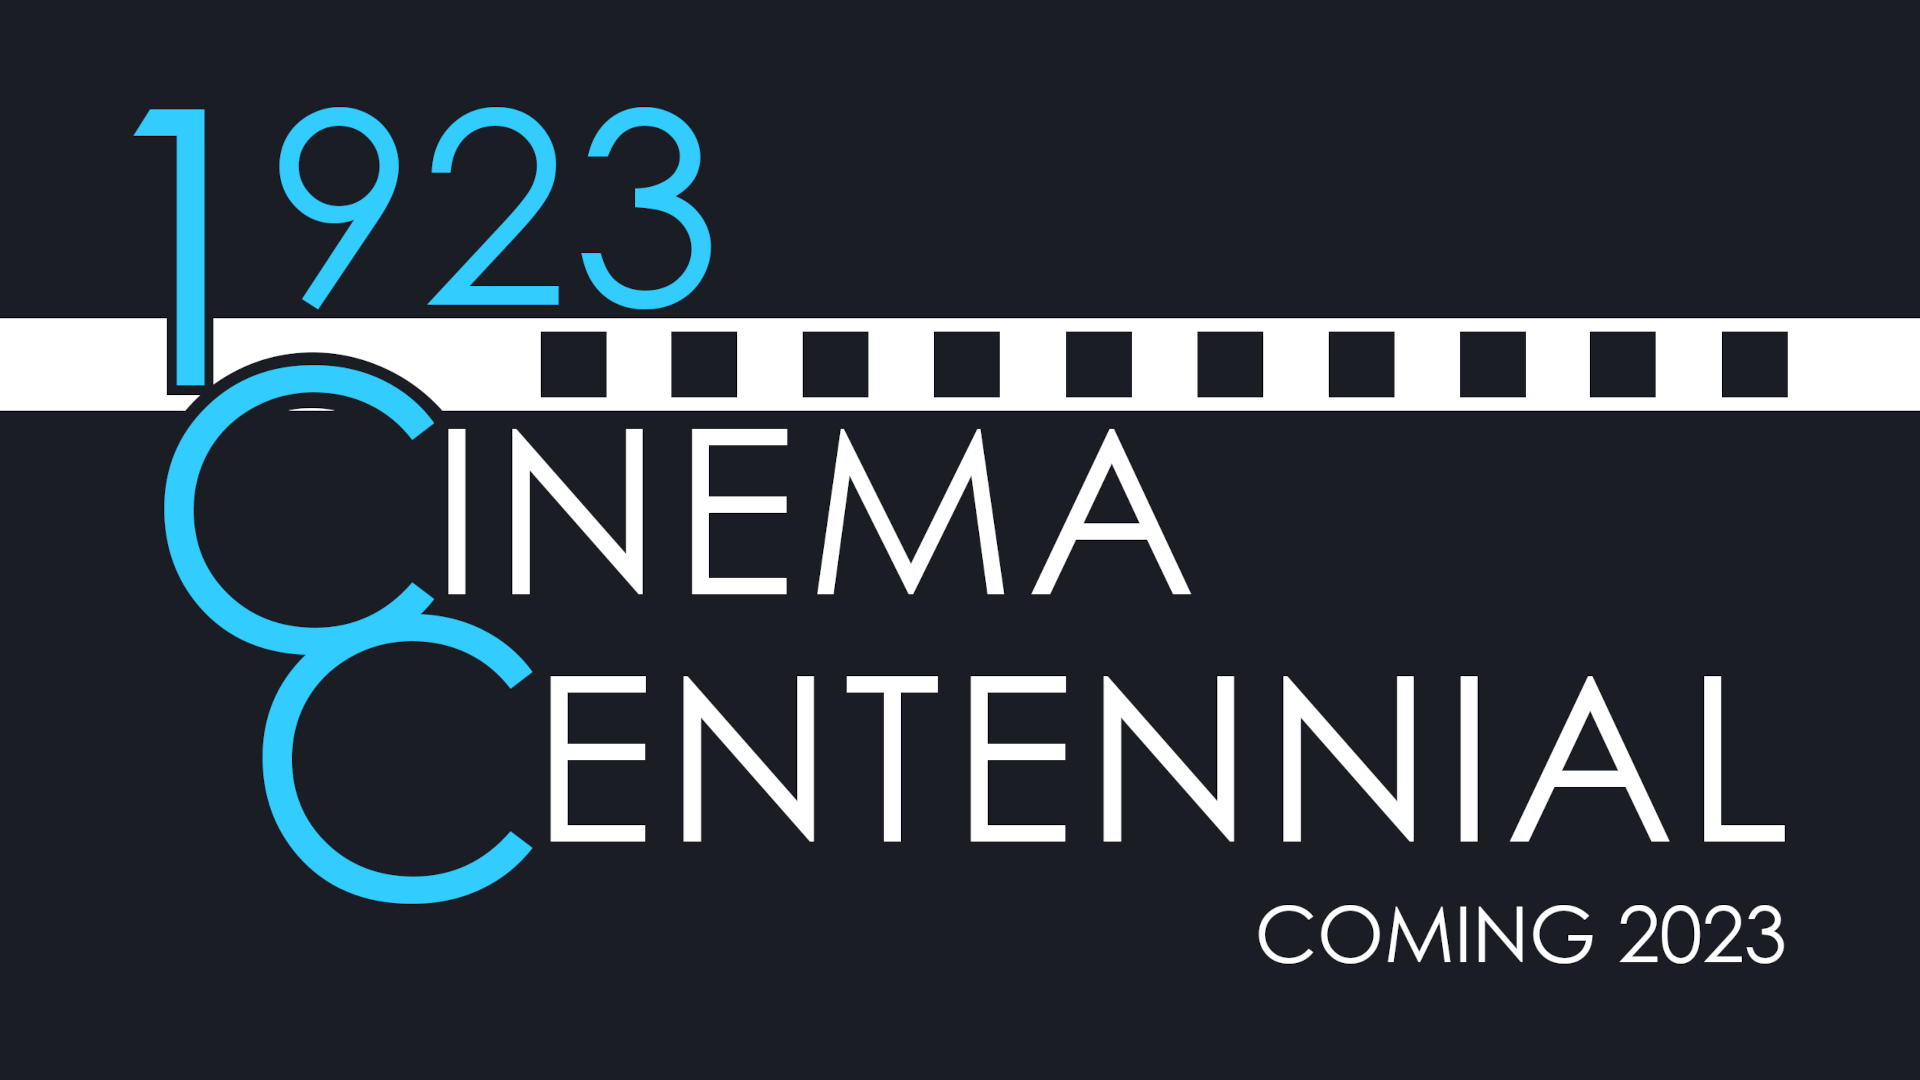 1923 Cinema Centennial – Coming 2023